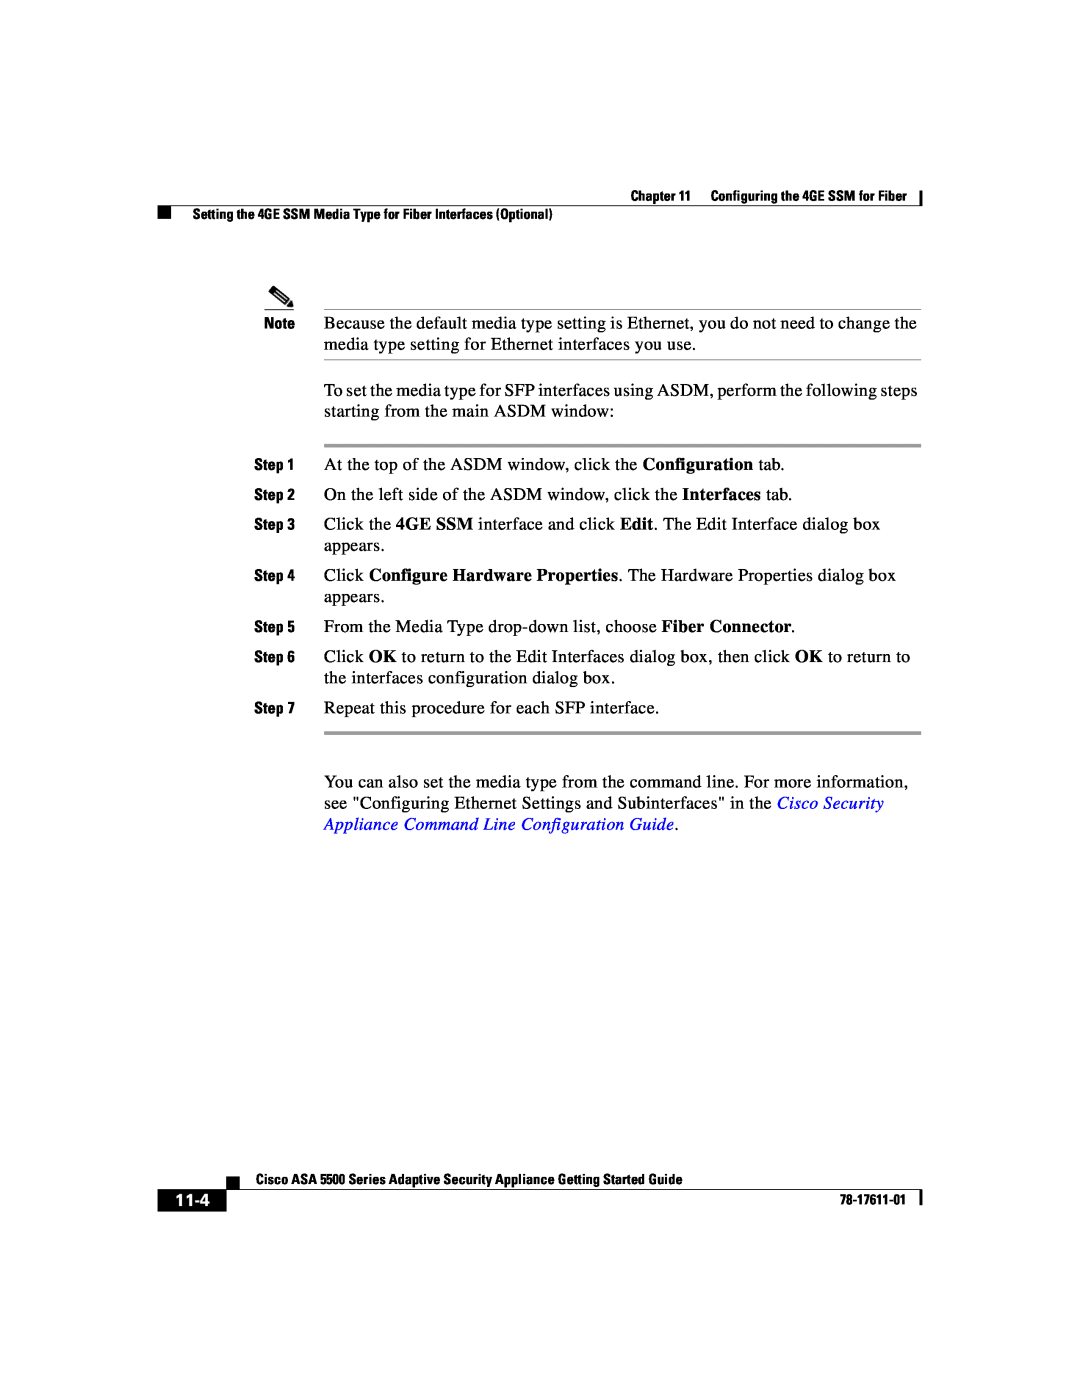 Cisco Systems ASA 5500 manual 11-4 